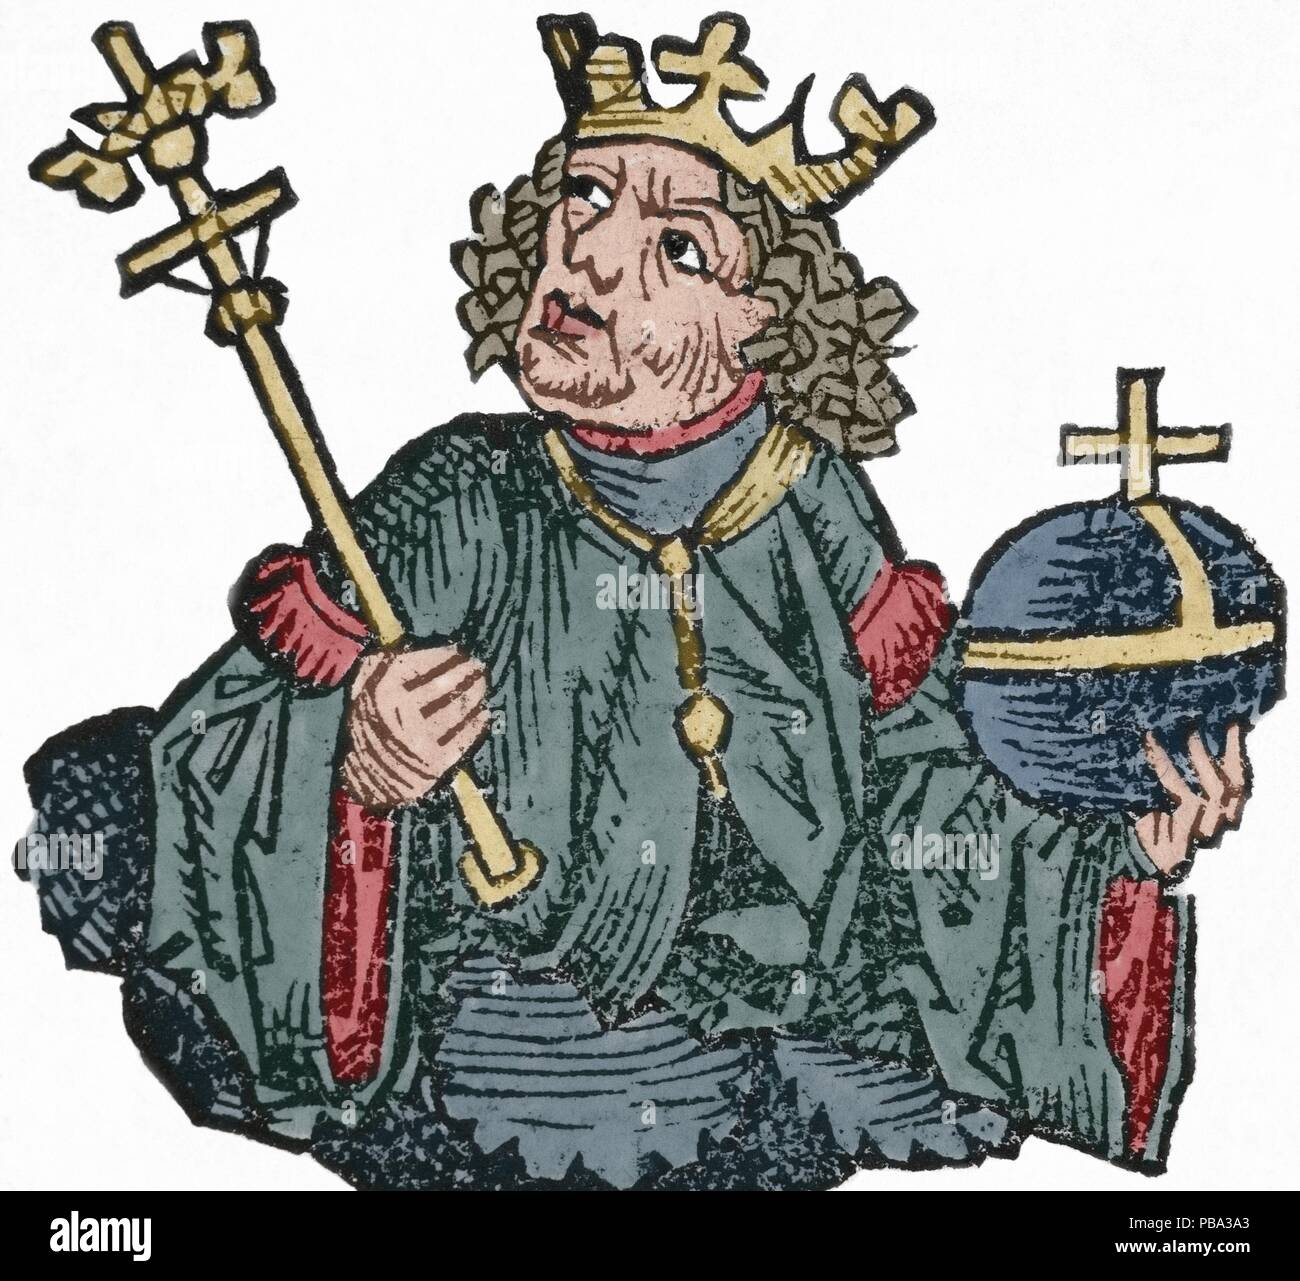 Carlos II de Anjou (1285-1309). Rey de Nápoles (1254-1309). Se enfrentó en varias ocasiones a los reyes de Aragón por el dominio de Sicilia. Grabado del siglo XVI. Coloreado. Foto Stock